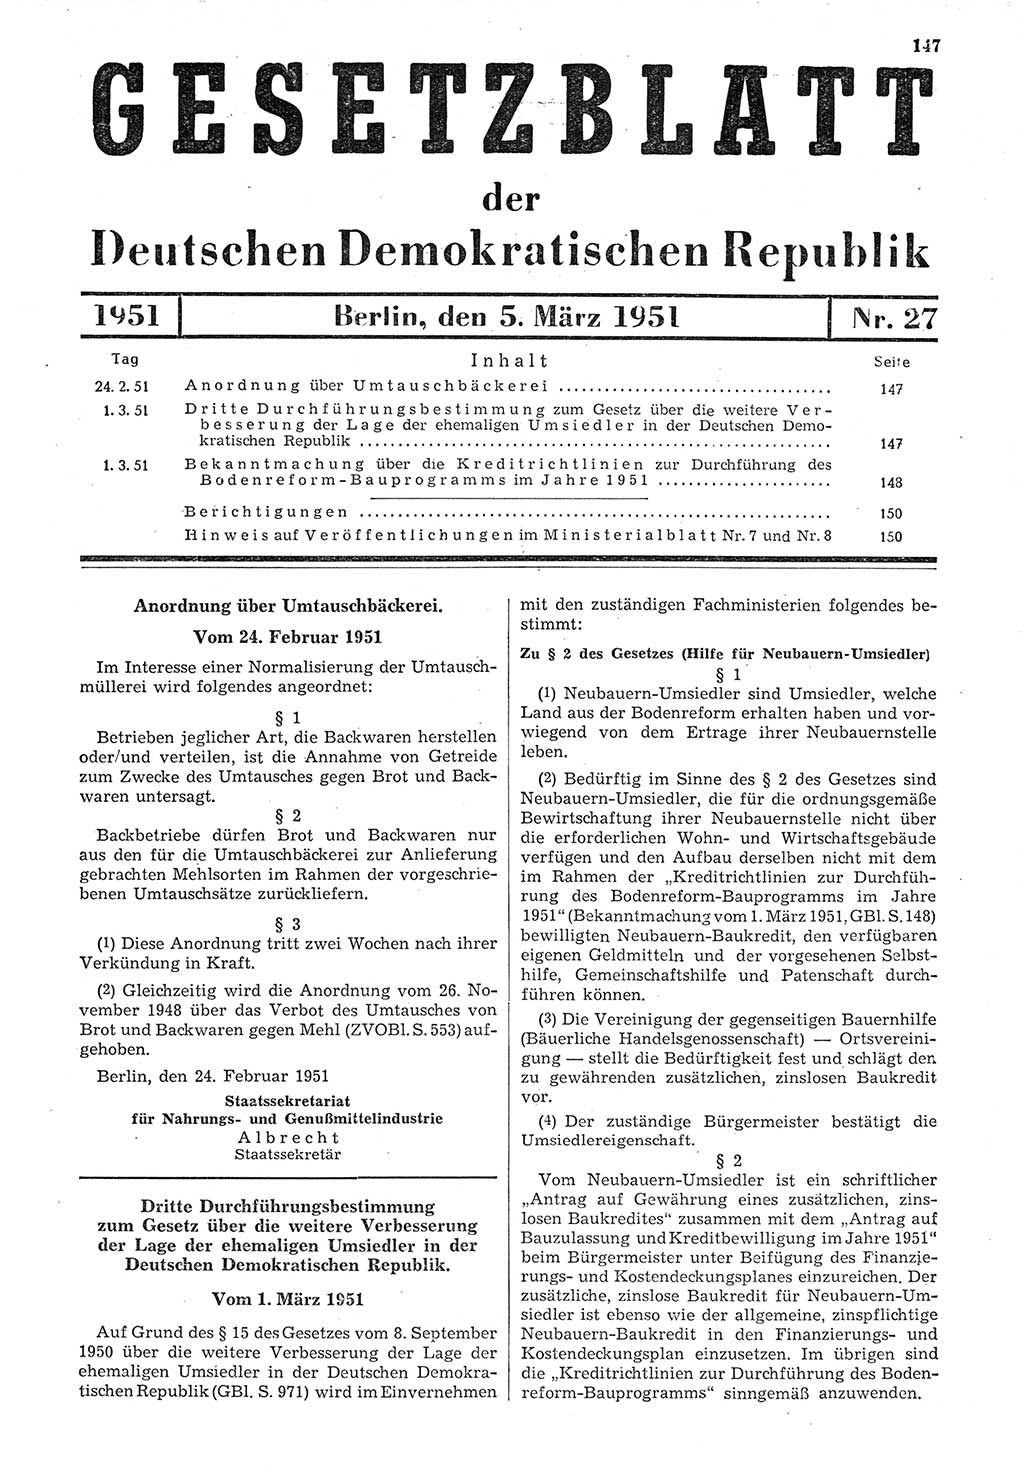 Gesetzblatt (GBl.) der Deutschen Demokratischen Republik (DDR) 1951, Seite 147 (GBl. DDR 1951, S. 147)